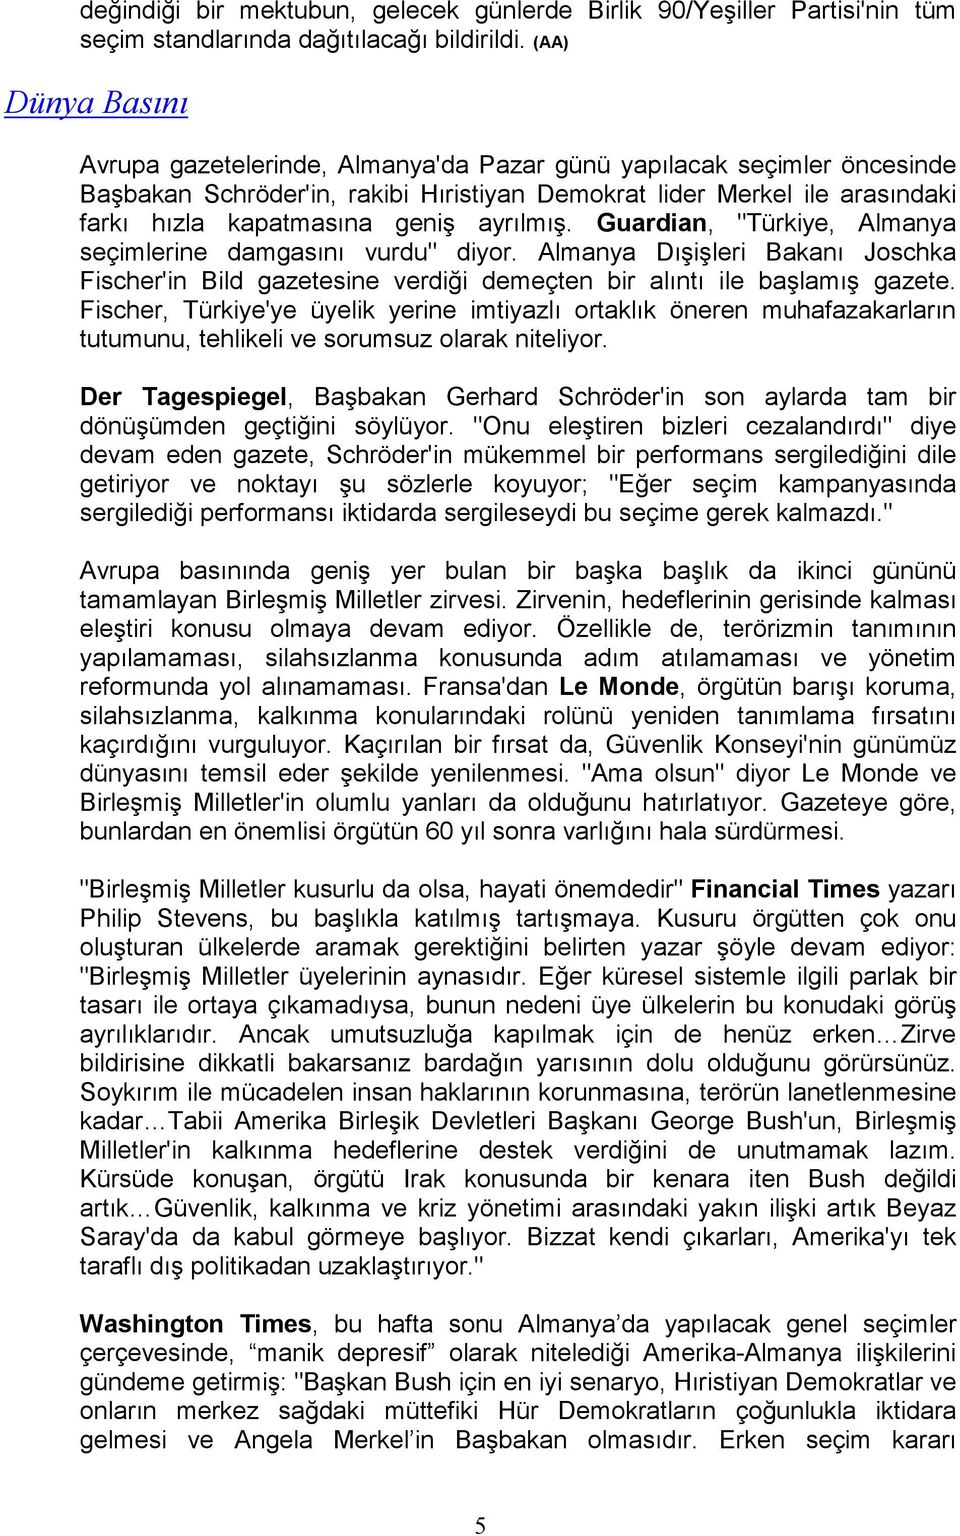 ayrılmış. Guardian, "Türkiye, Almanya seçimlerine damgasını vurdu" diyor. Almanya Dışişleri Bakanı Joschka Fischer'in Bild gazetesine verdiği demeçten bir alıntı ile başlamış gazete.